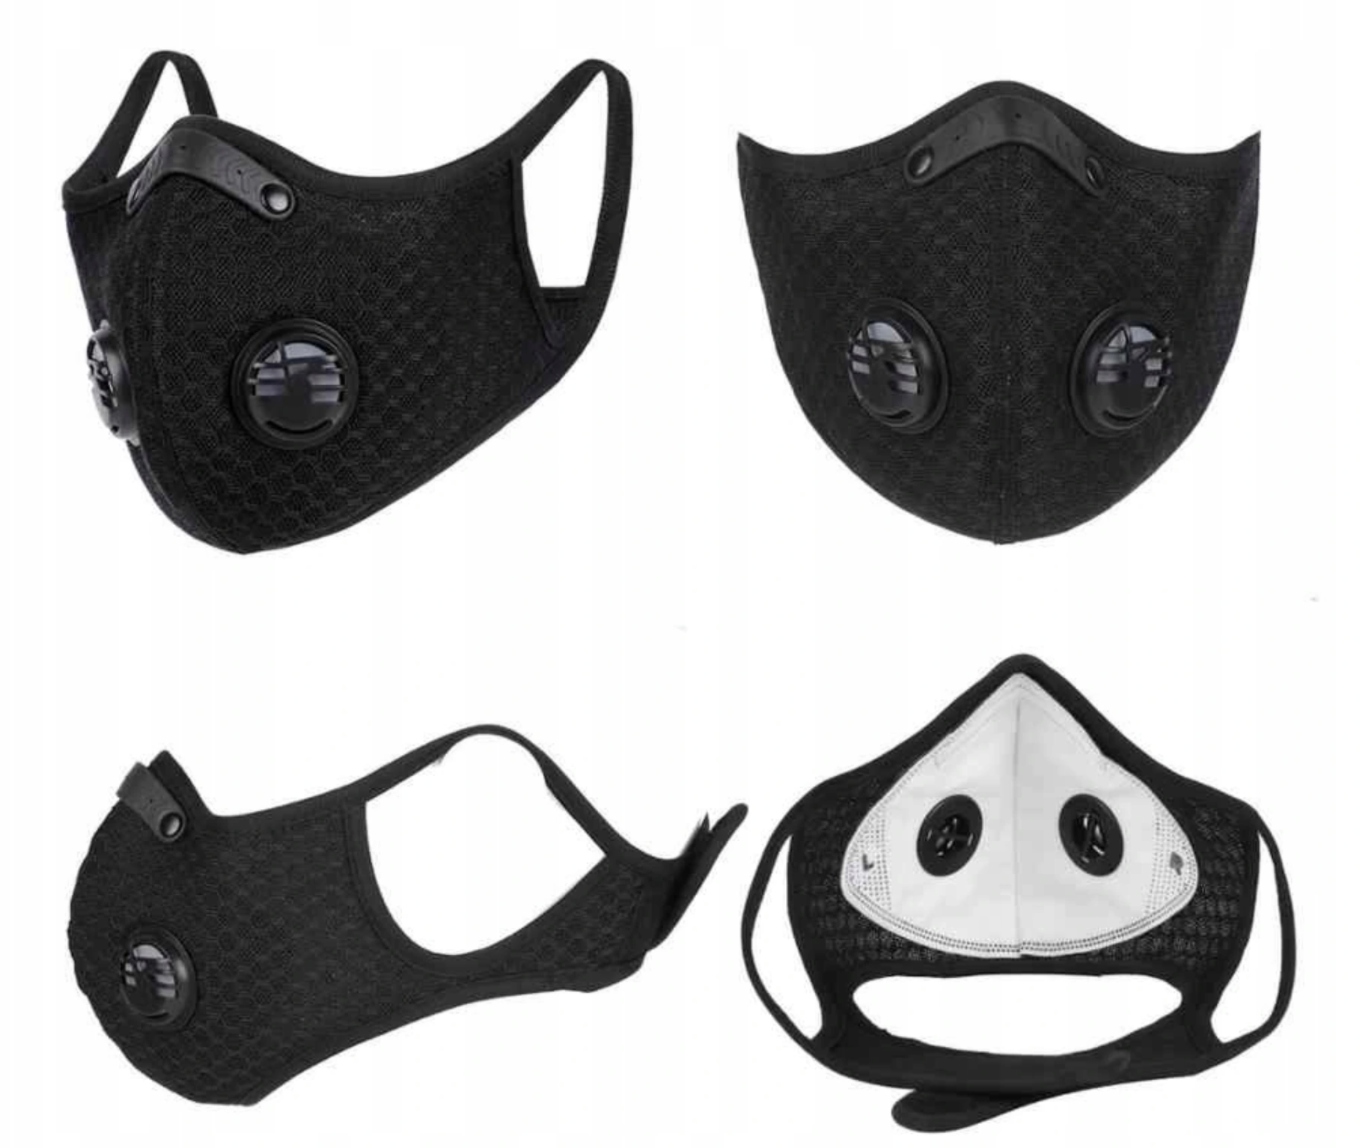 Маска сменный фильтр. Респиратор West biking (Black). Пылезащитная маска РМ2.5. Велосипедная маска. Велосипедная маска для лица.